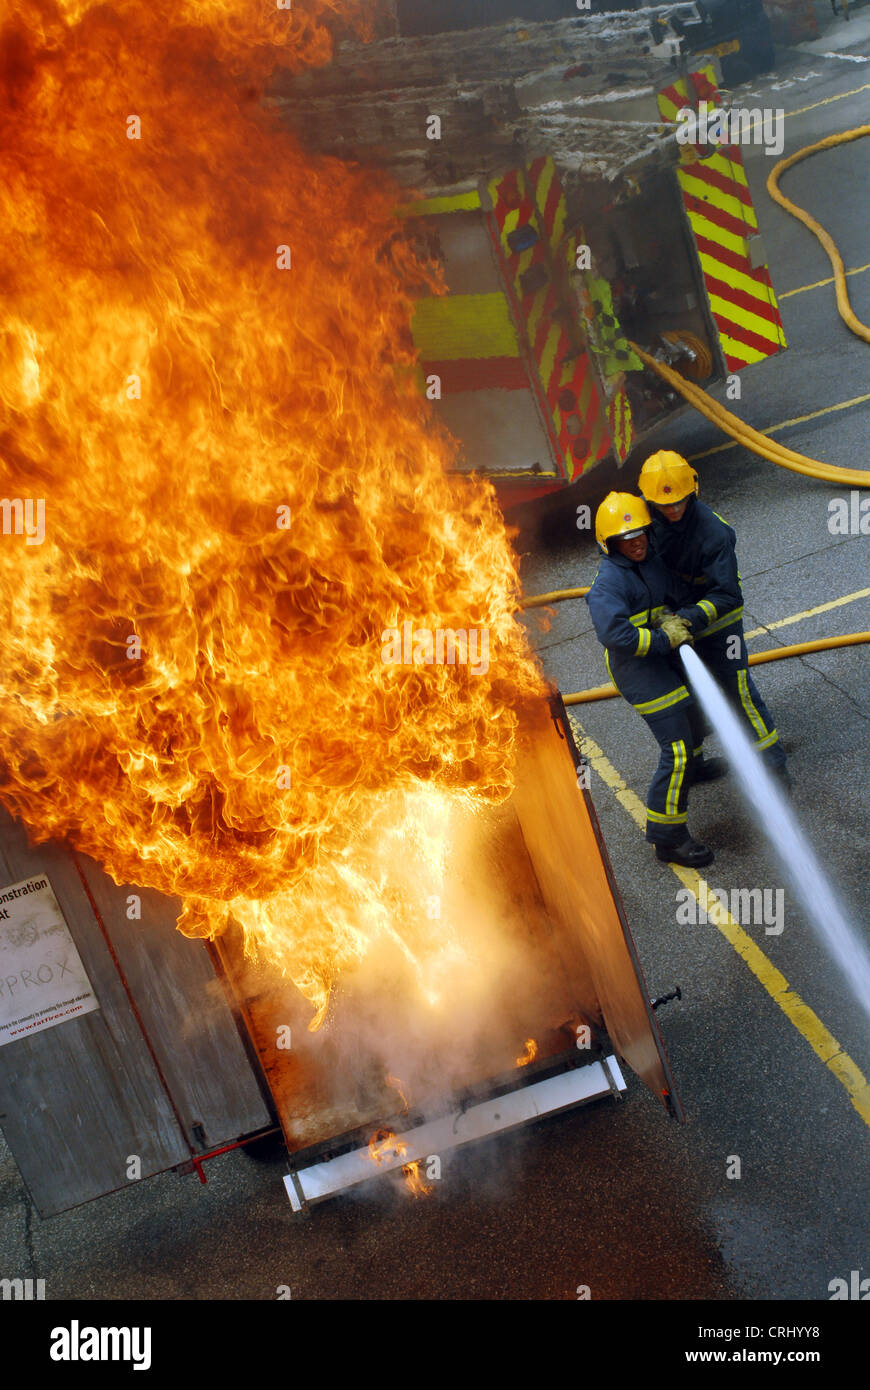 Ein Beispiel für die Gefahren eines Brandes Pfanne. Feuerwehrleute versuchen, die Flammen zu löschen. Stockfoto